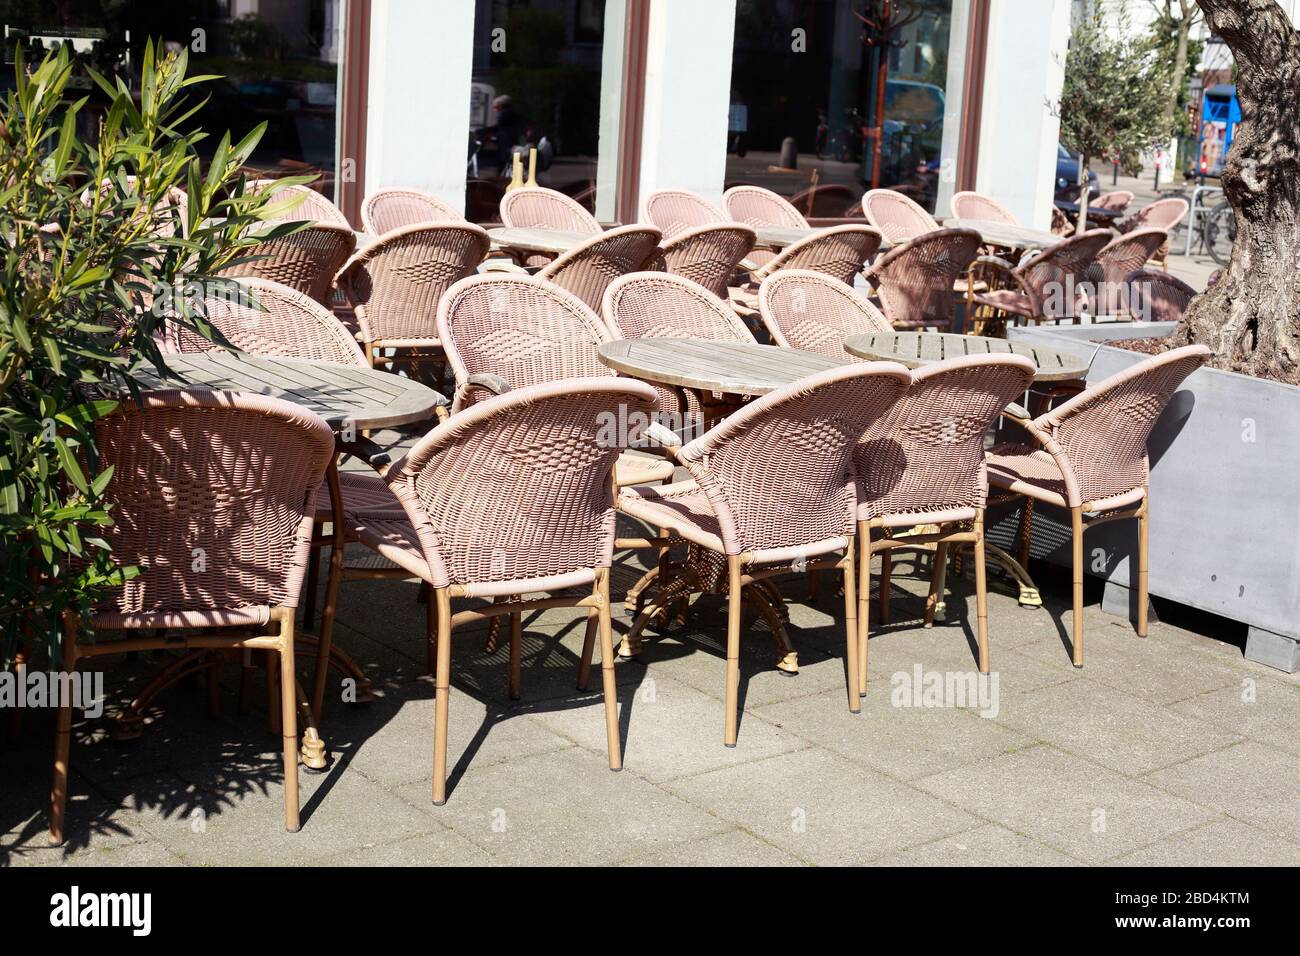 Sedie da caffè vuote chiuse a causa del virus corona, Brema, Germania, Europa Foto Stock